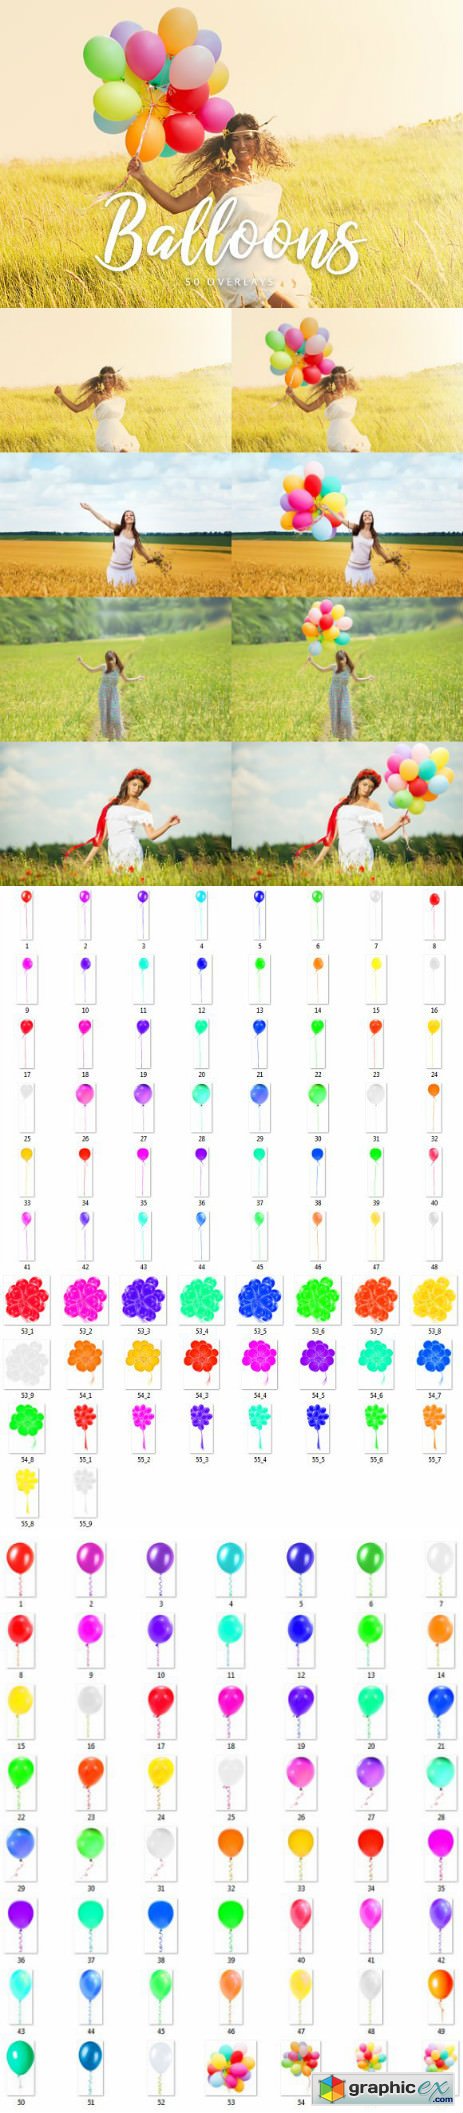 Balloons Overlays - 50 Overlays